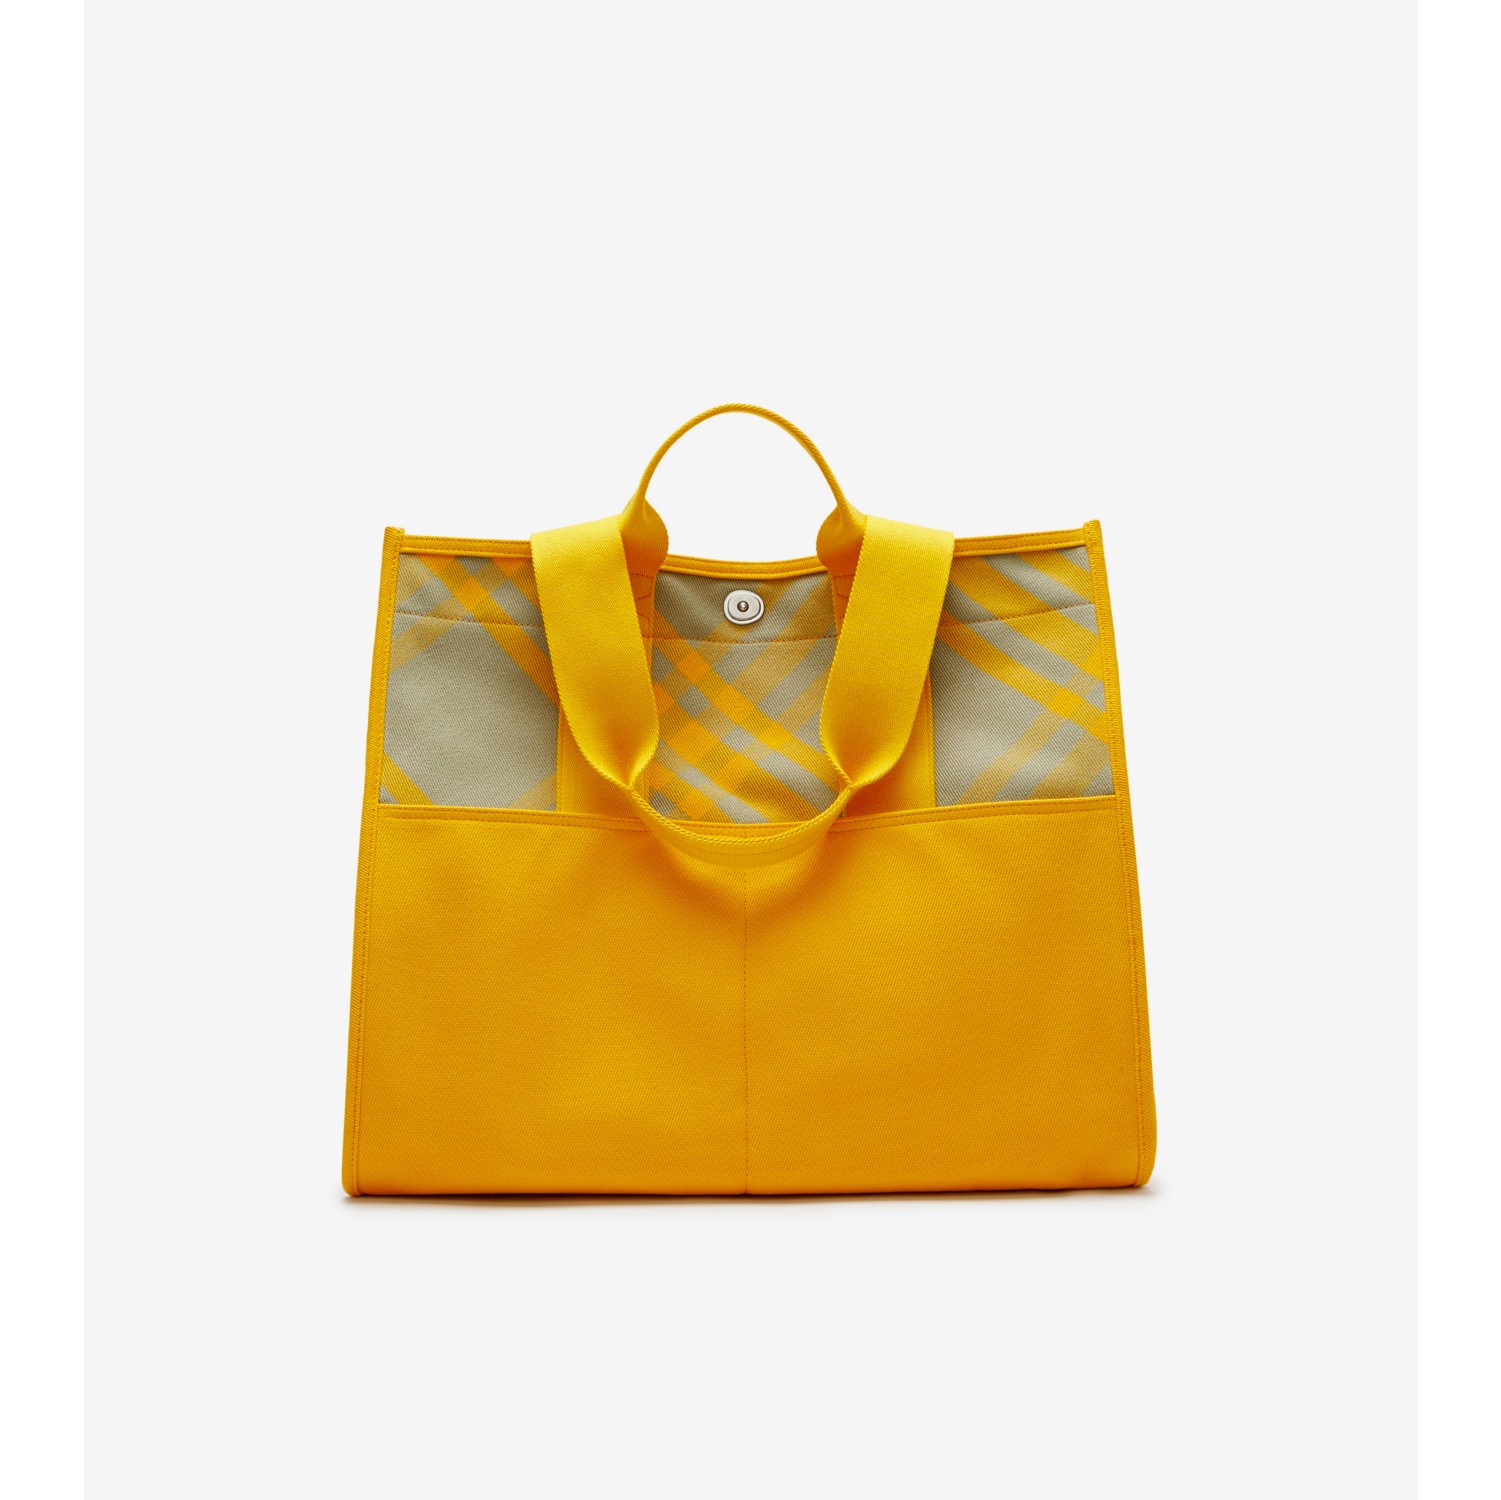 New Shopper Small Tote Bag